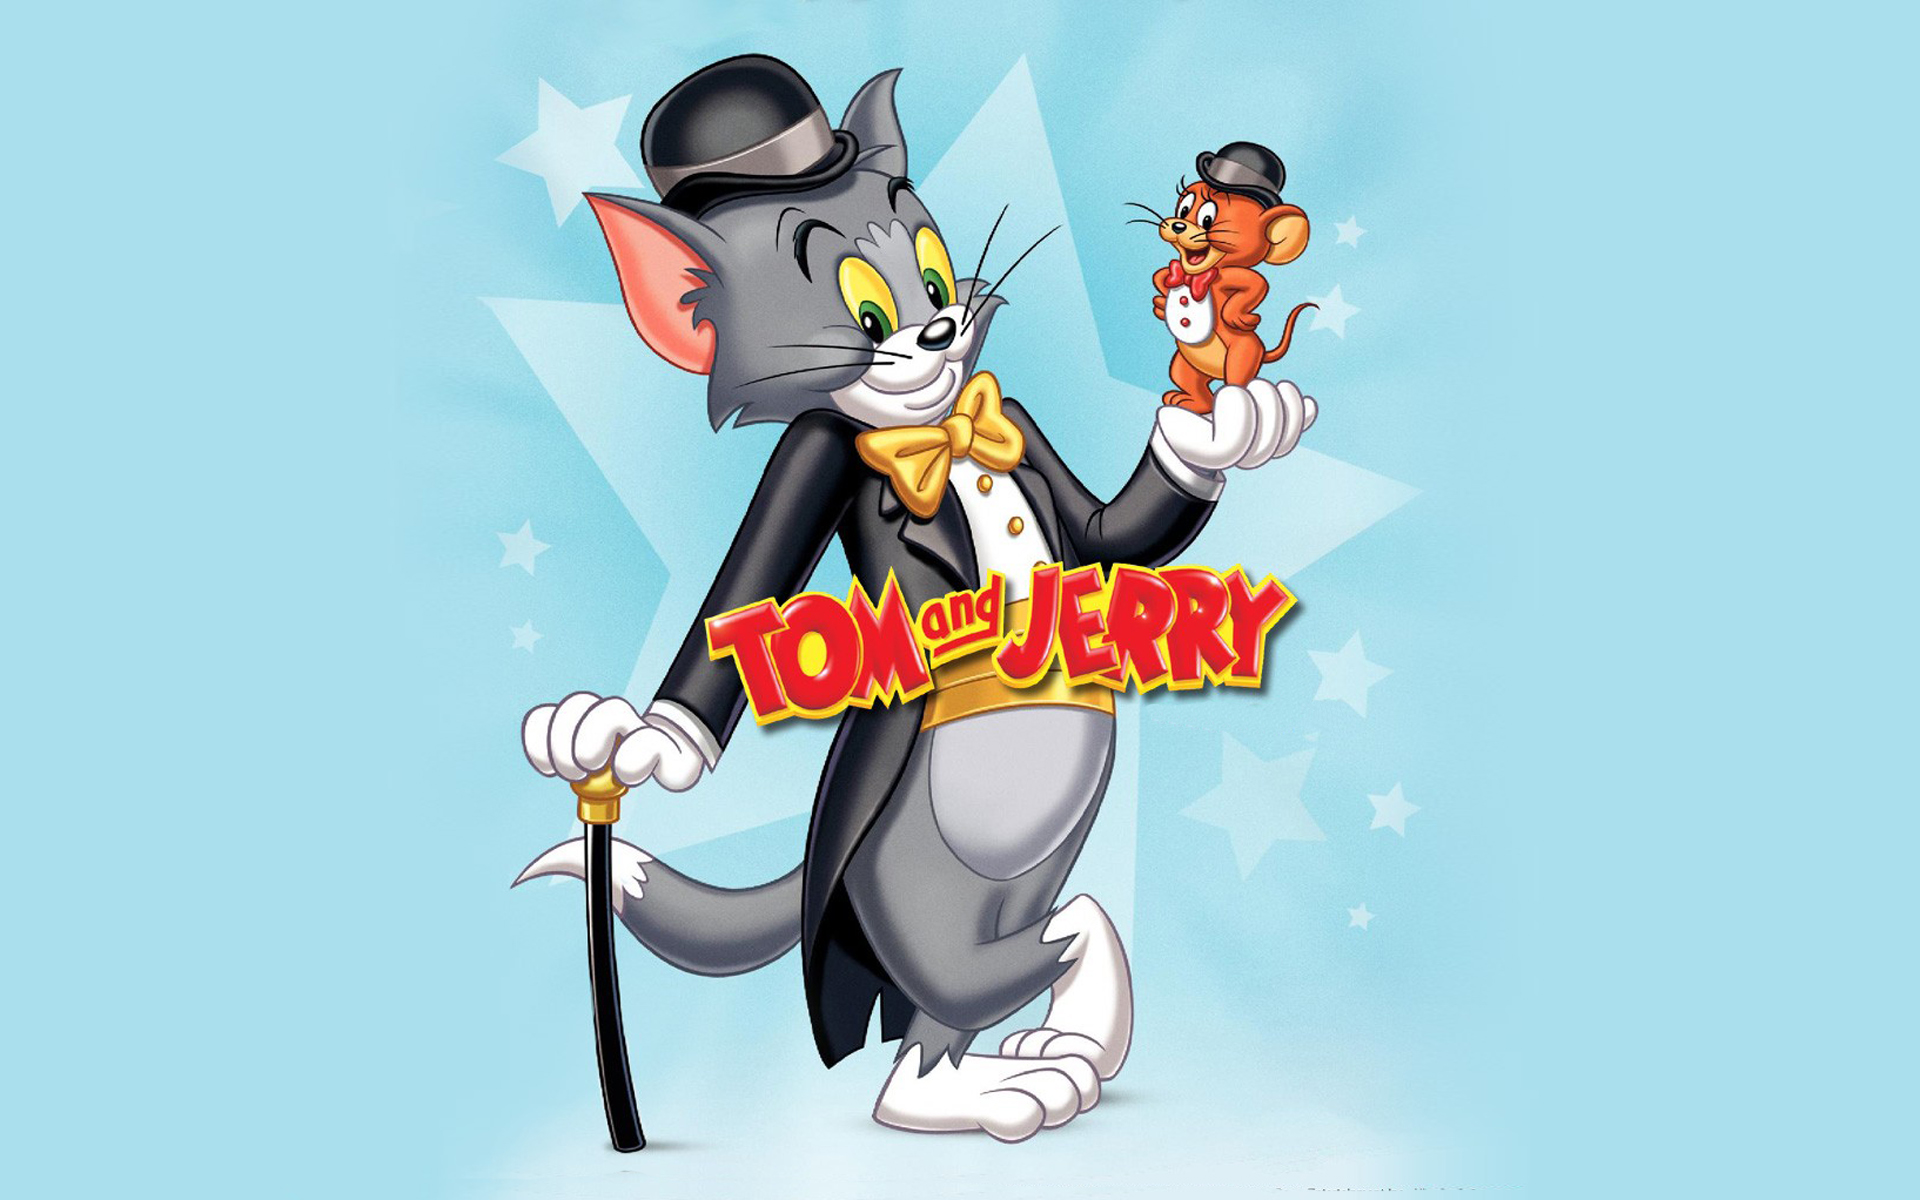 Злые обои том и джерри. Tom and Jerry. Том и Джерри в смокинге. Том и Джерри 1920х1080.